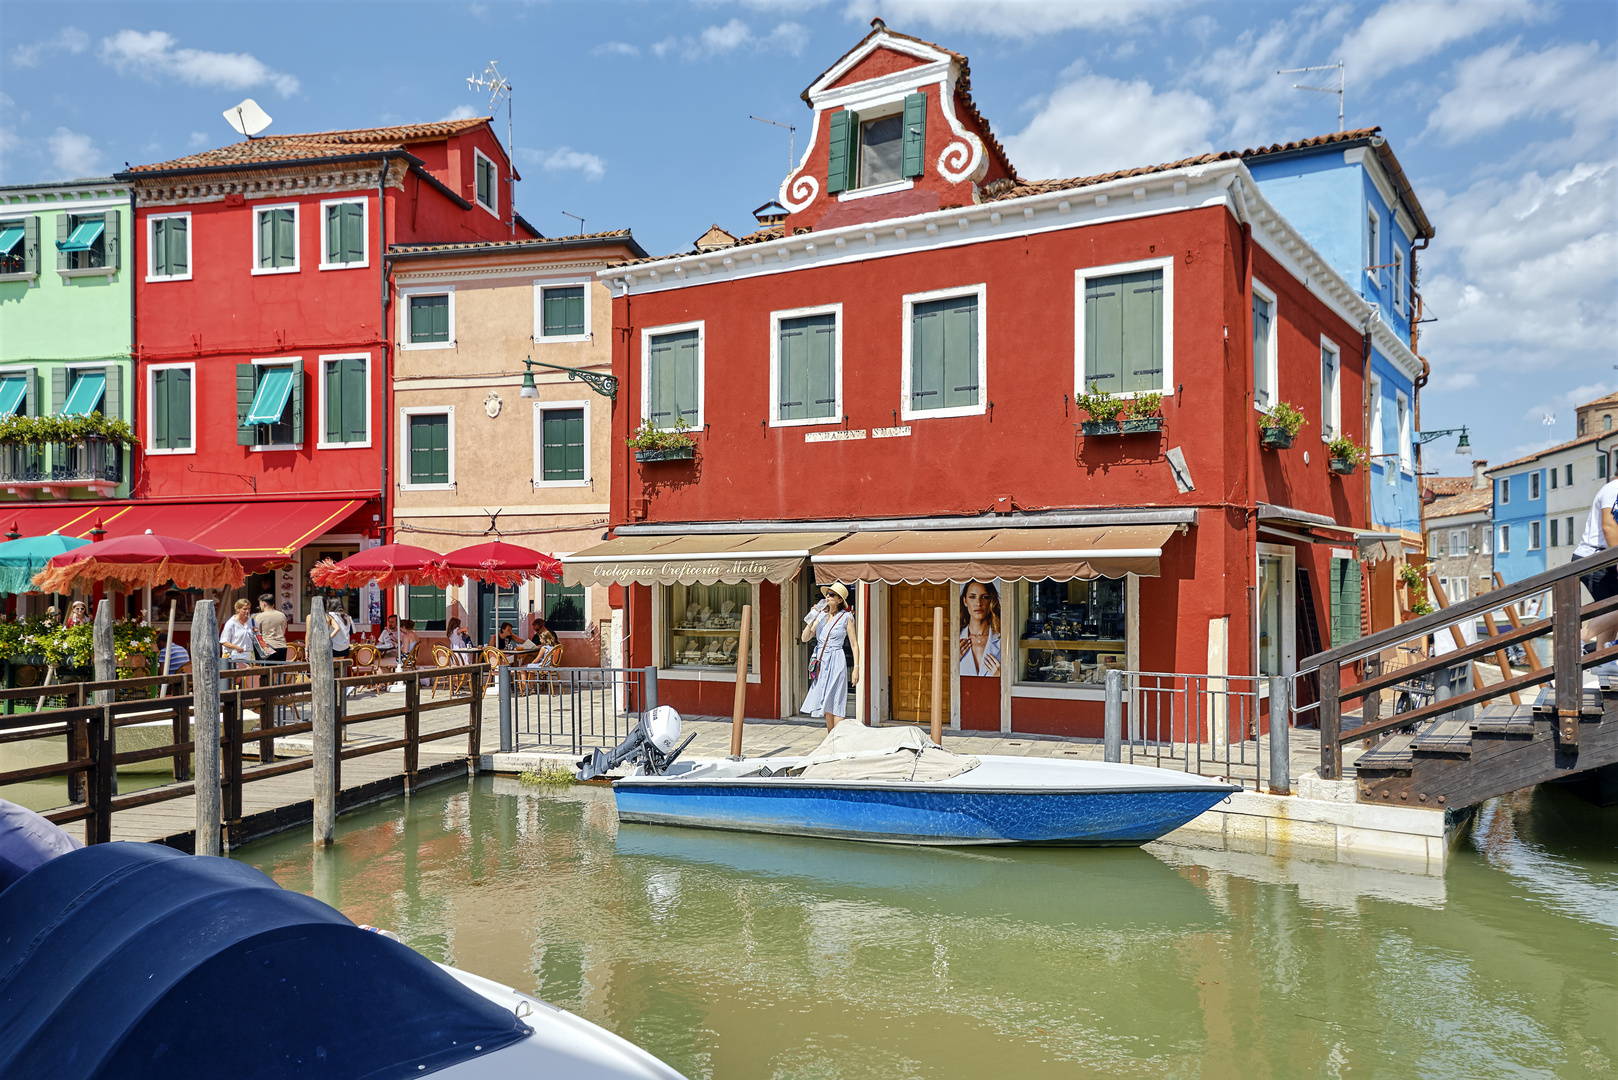 Venezianische Träume: Eine Reise durch die Kanäle und Gassen von Venedig